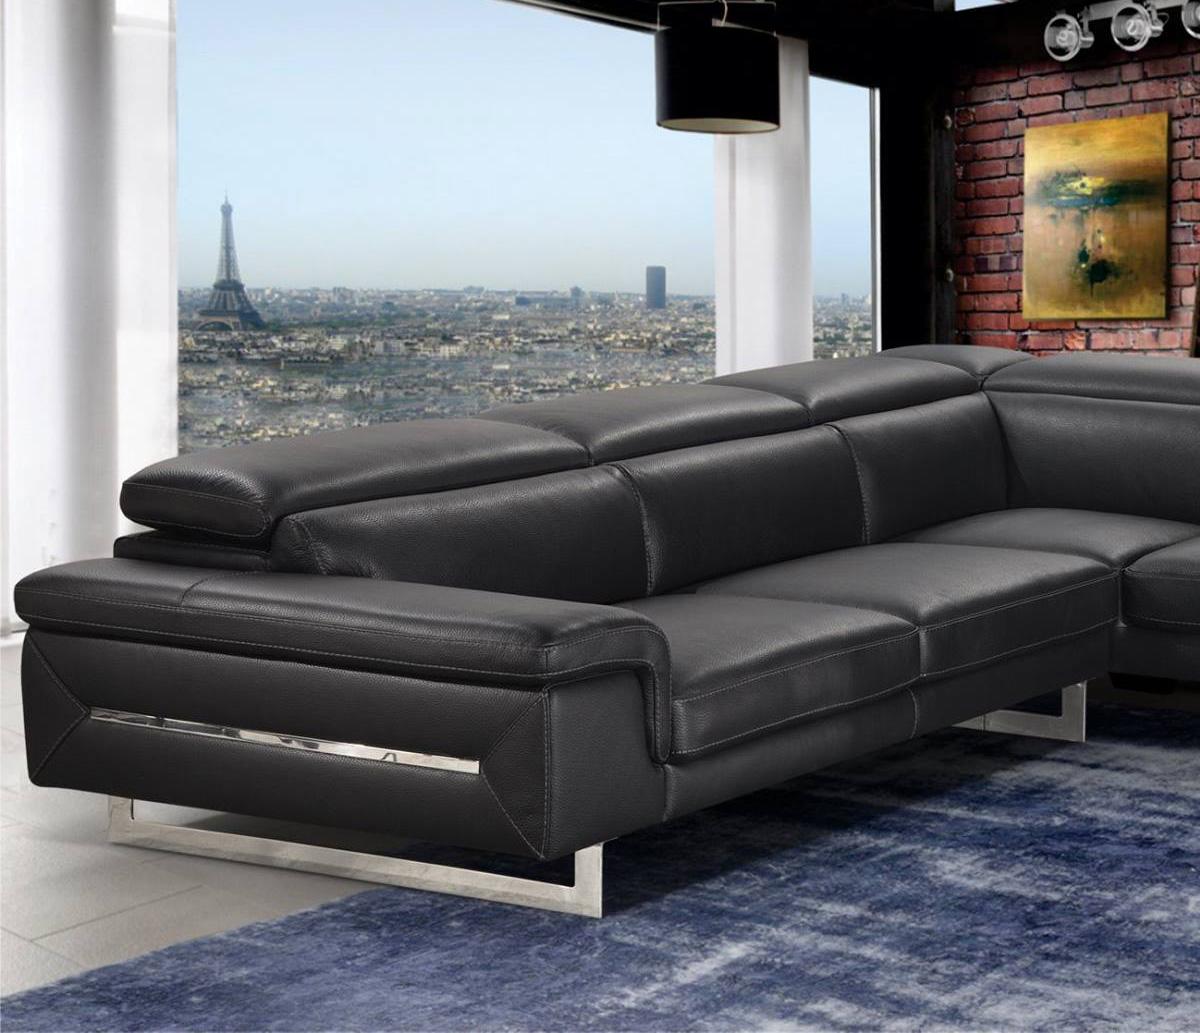 

    
Italian Black Leather Sectional Sofa VIG Accenti Italia Lazio Contemporary Chic
